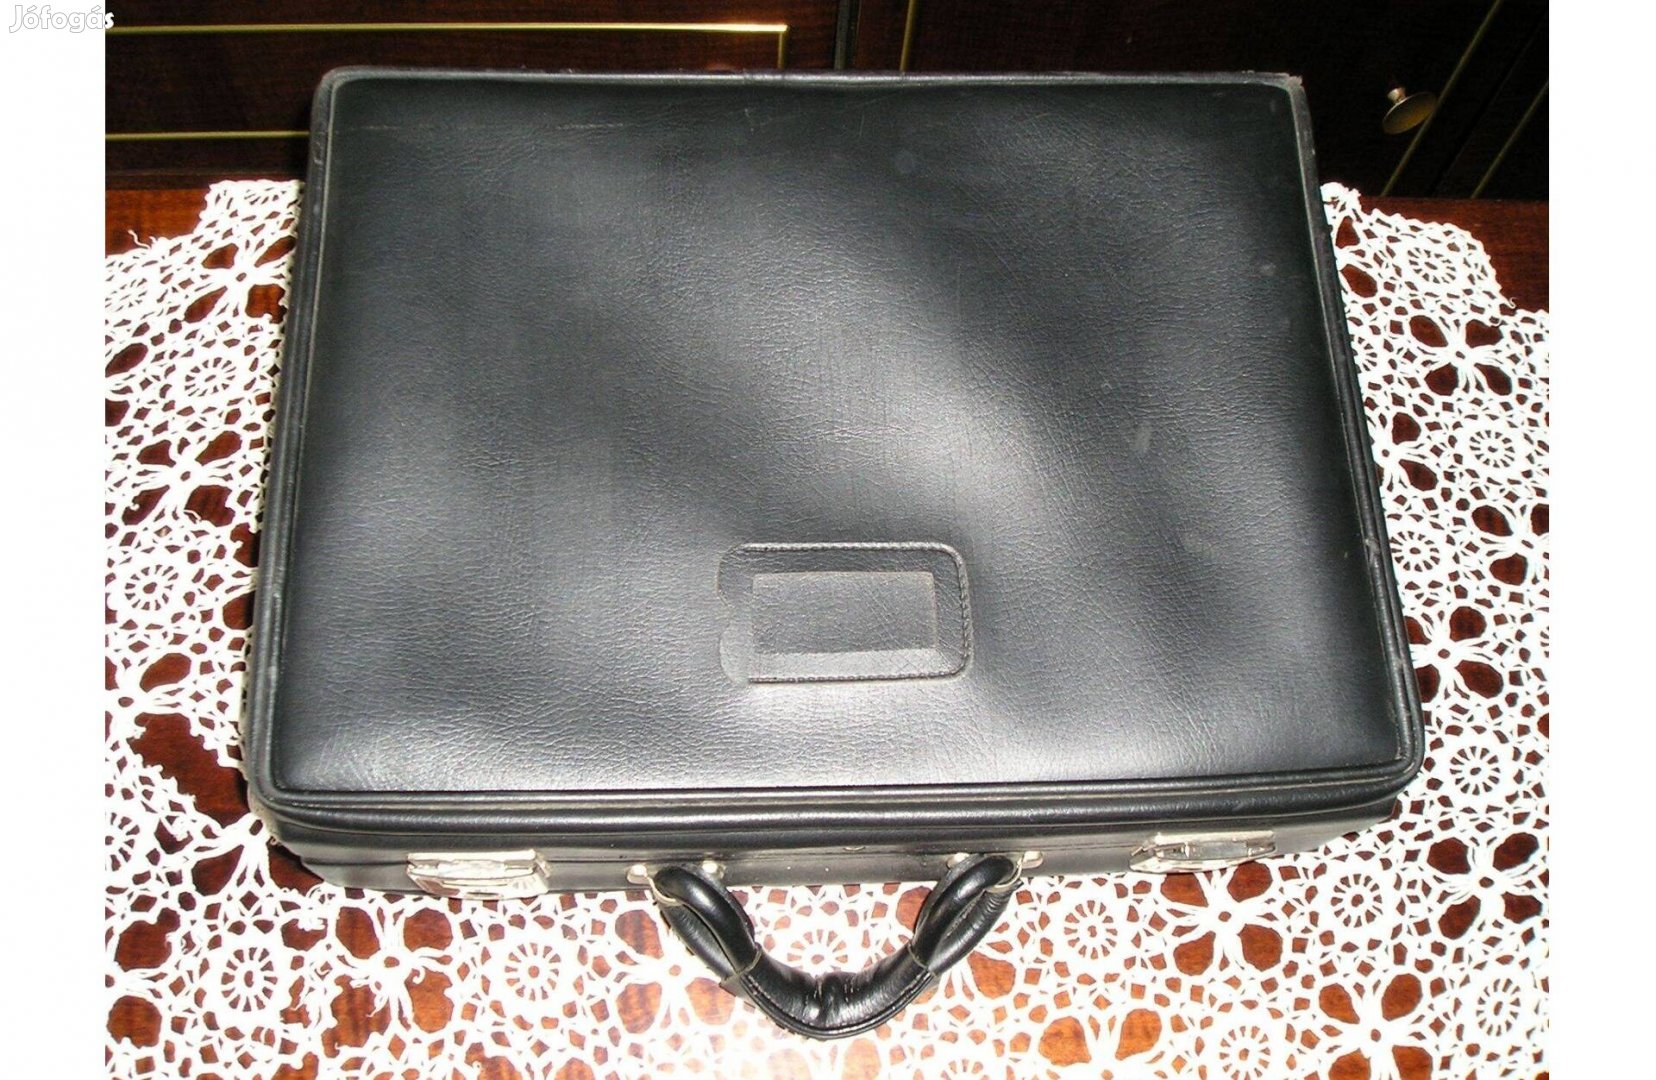 Kézitáska, kisbőrönd - 45 x 33 x 18 cm